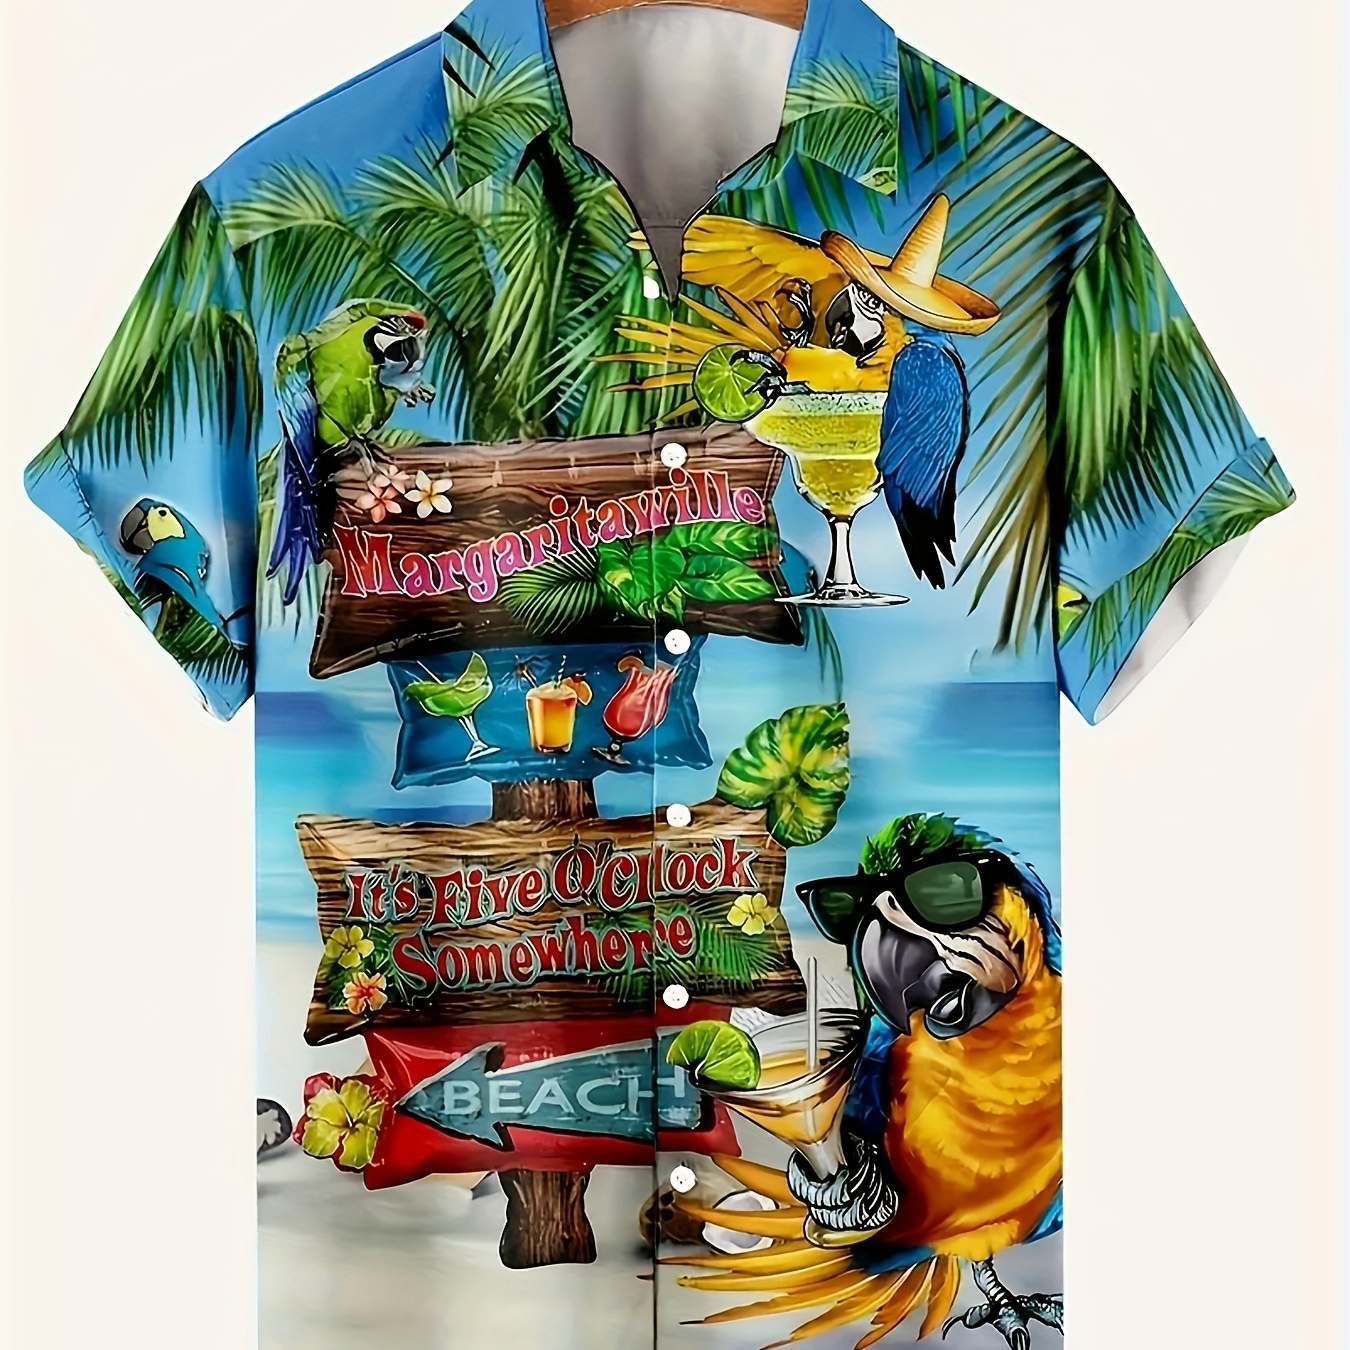 

Parrot & Beach Pattern Men's Short Sleeve Button Down Lapel Shirt For Summer Resort Holiday, Hawaiian Style